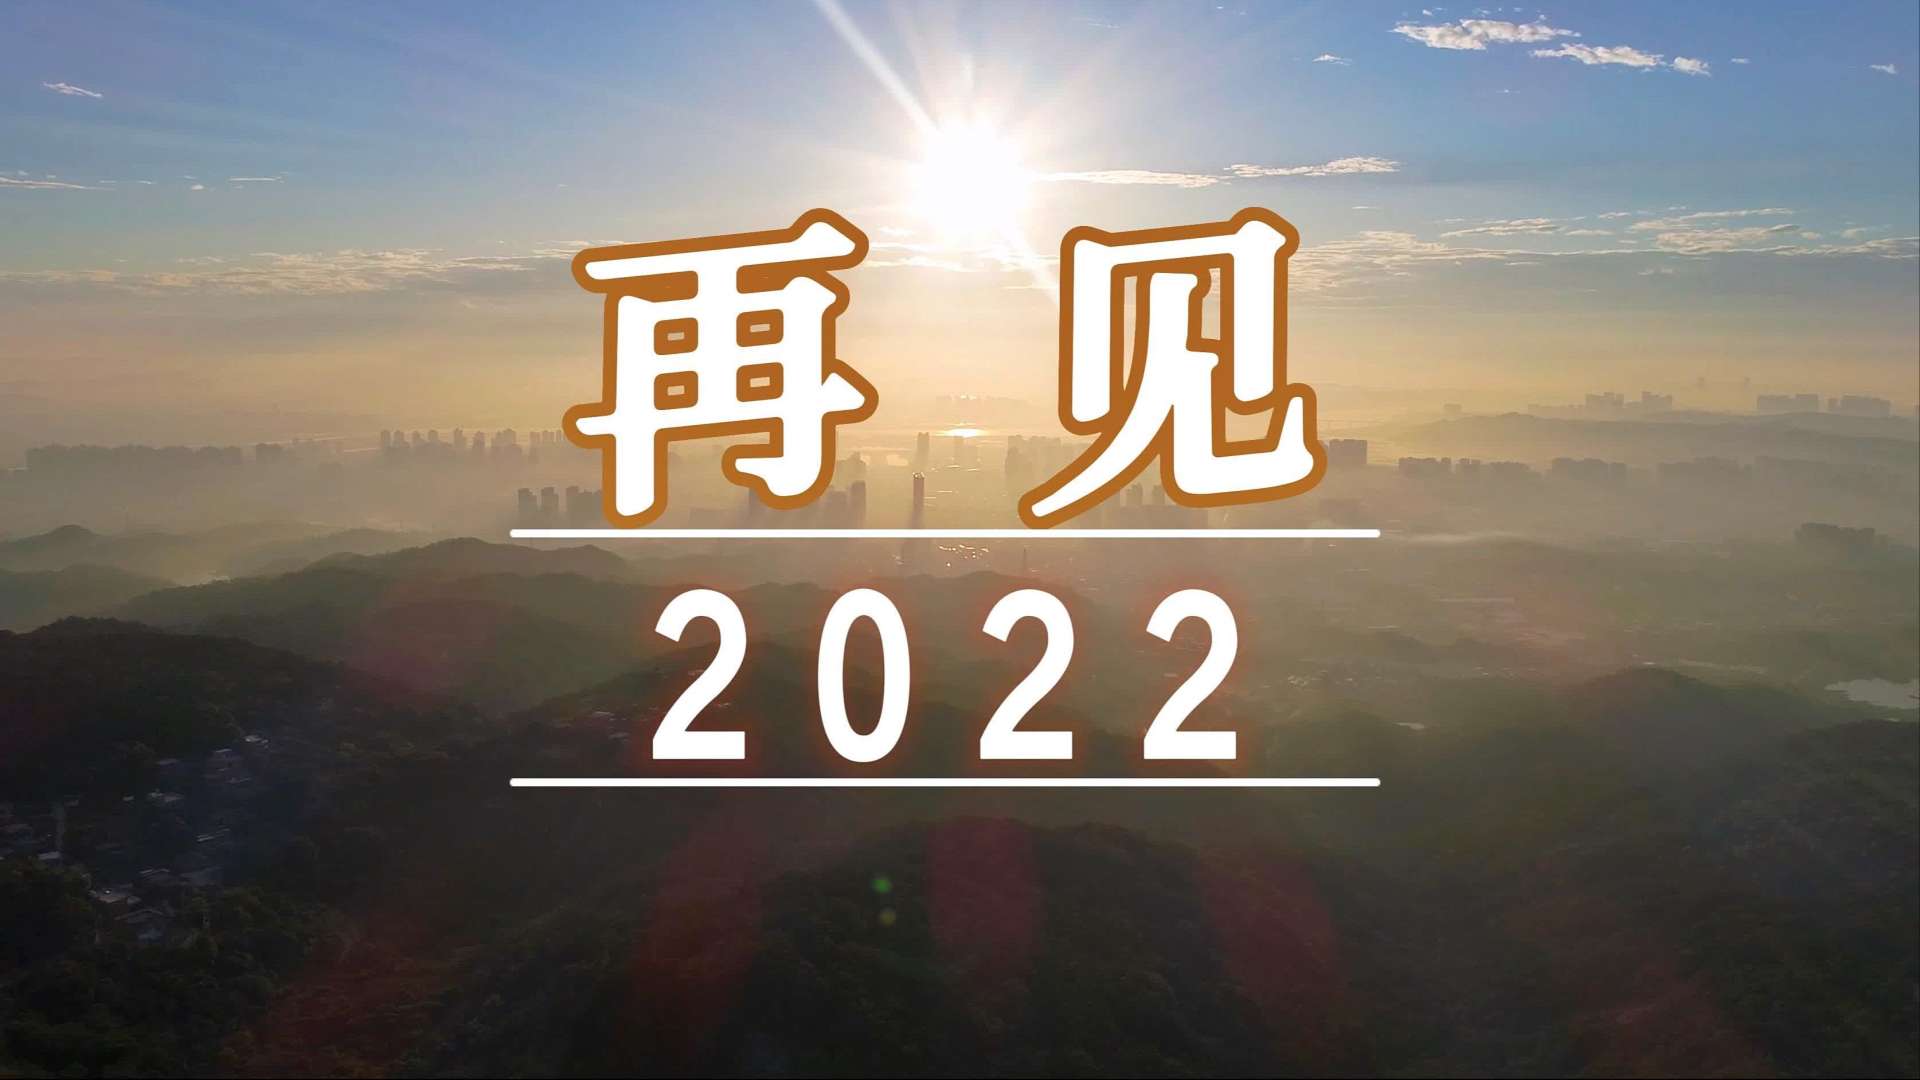 再见2022，你好2023